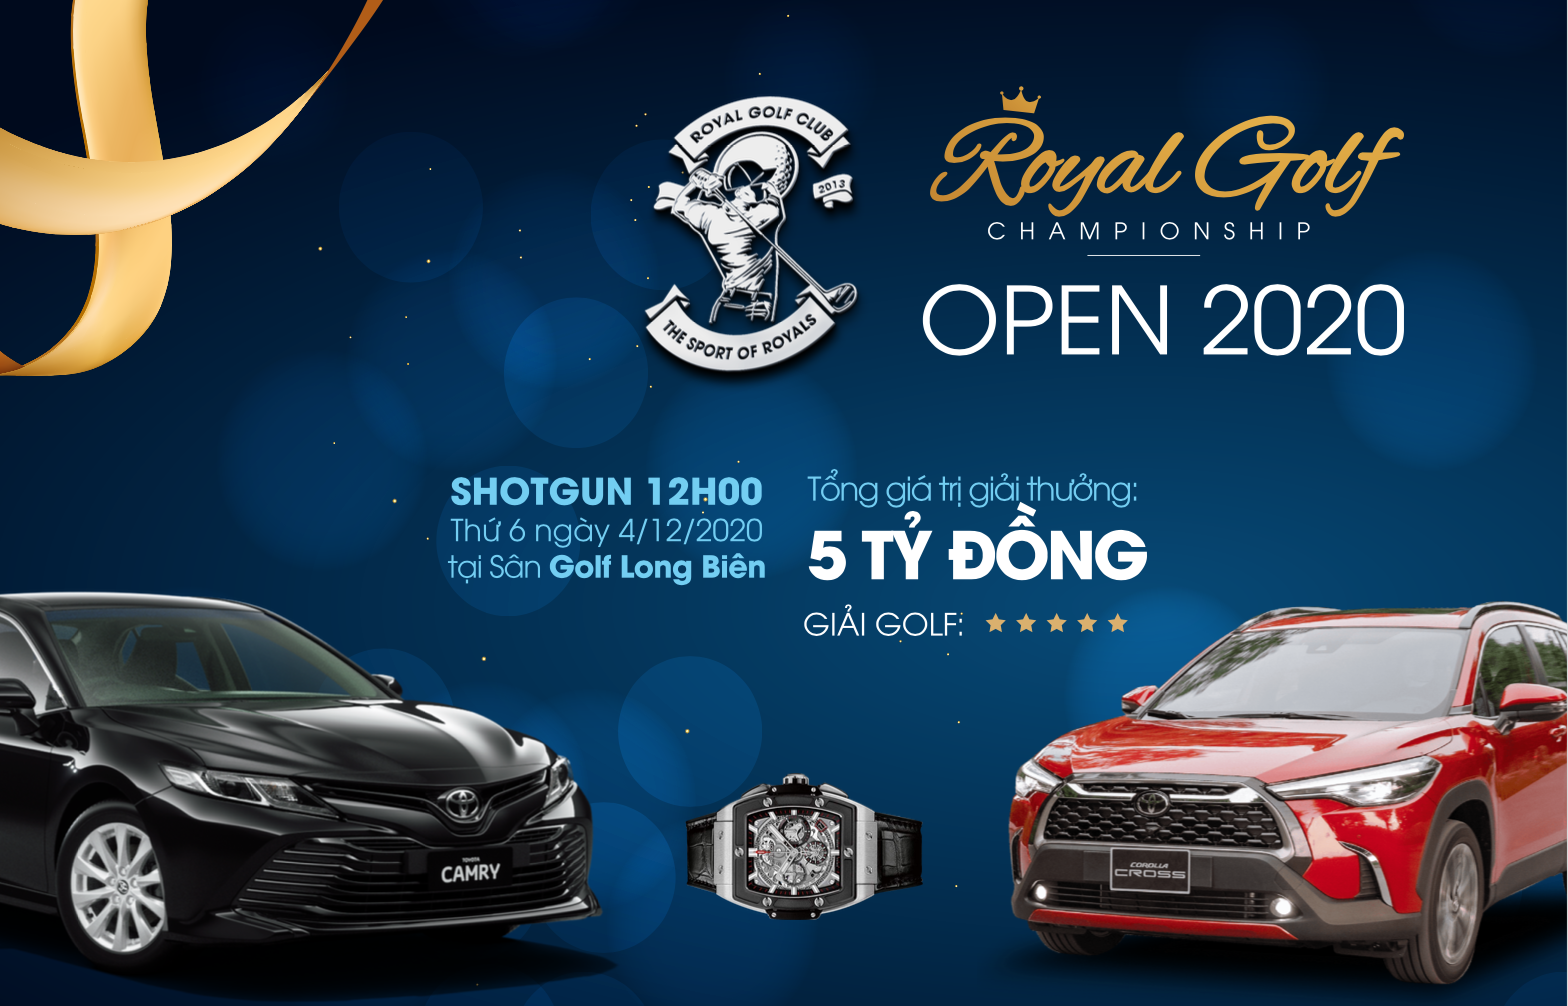 Giải đấu "Royal Golf Championship Open 2020" chuẩn bị khởi tranh